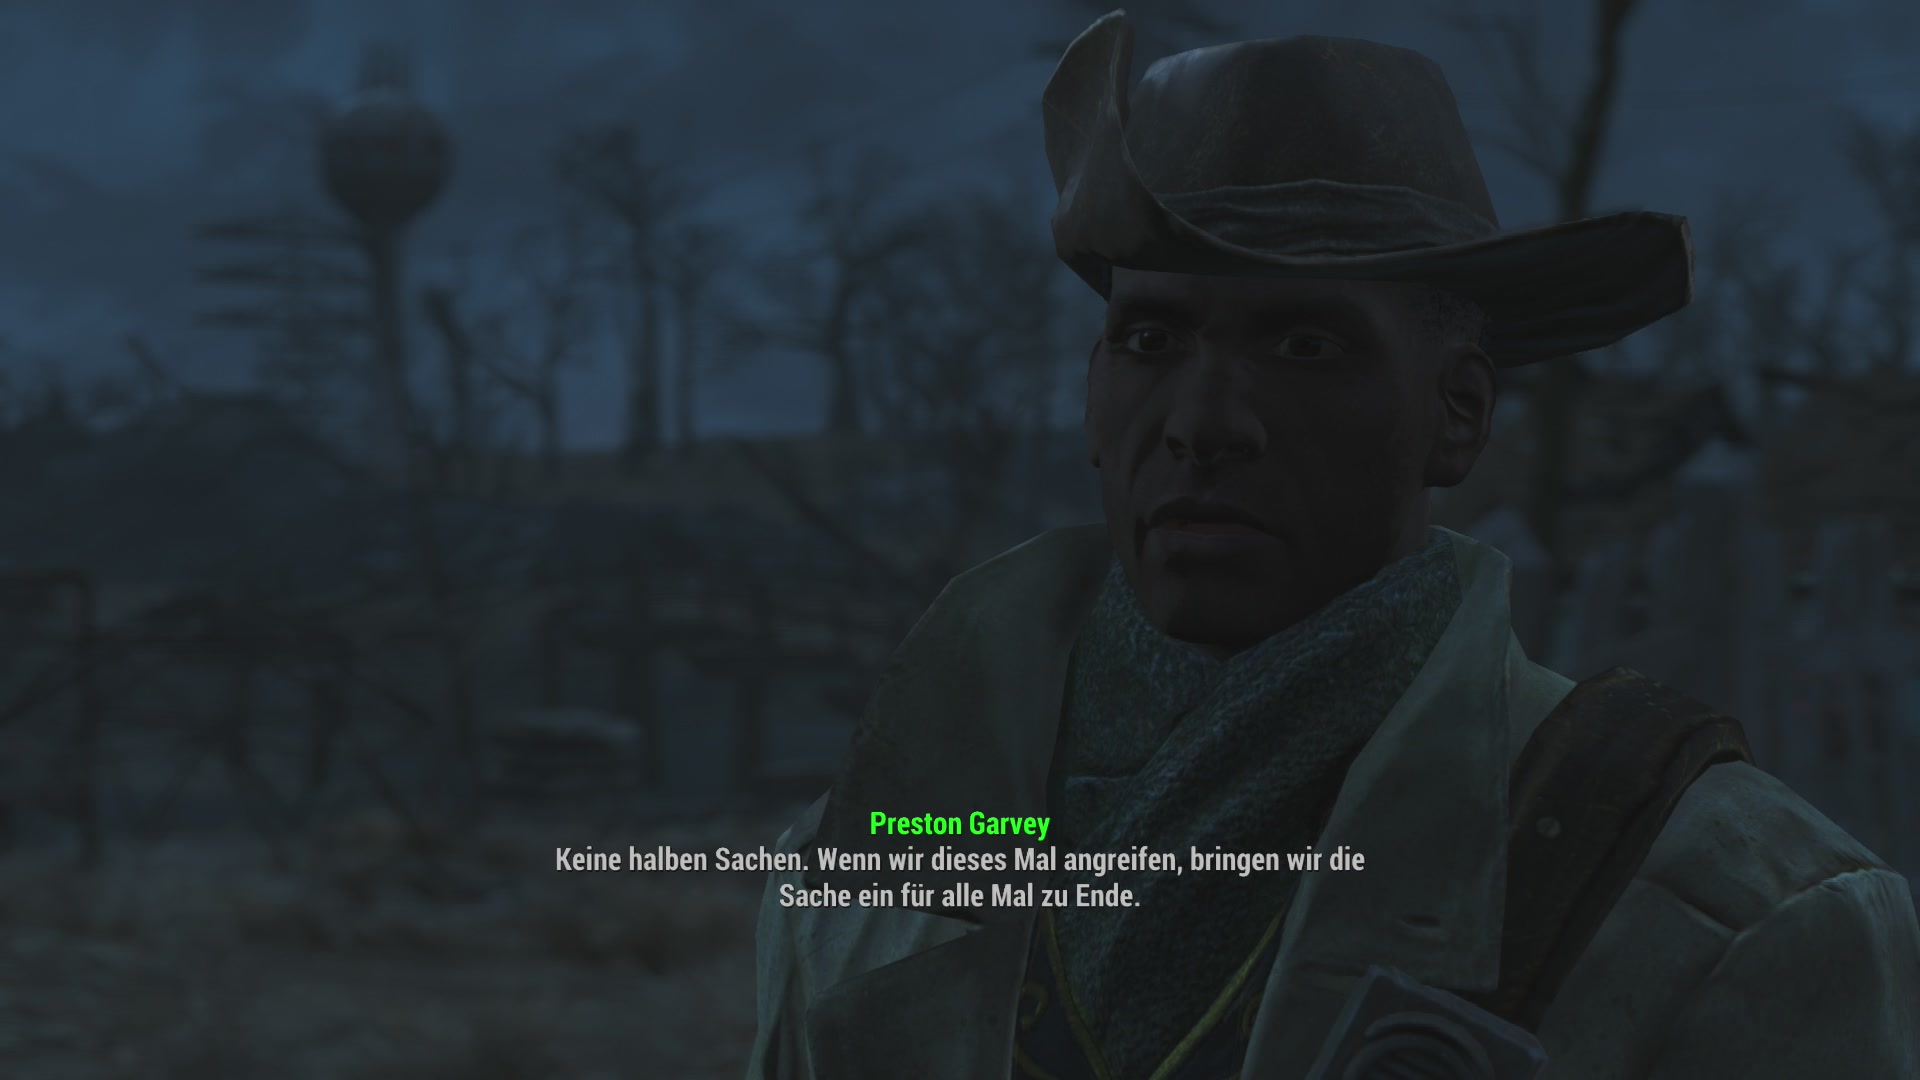 Fallout 4 миссии престона гарви фото 99